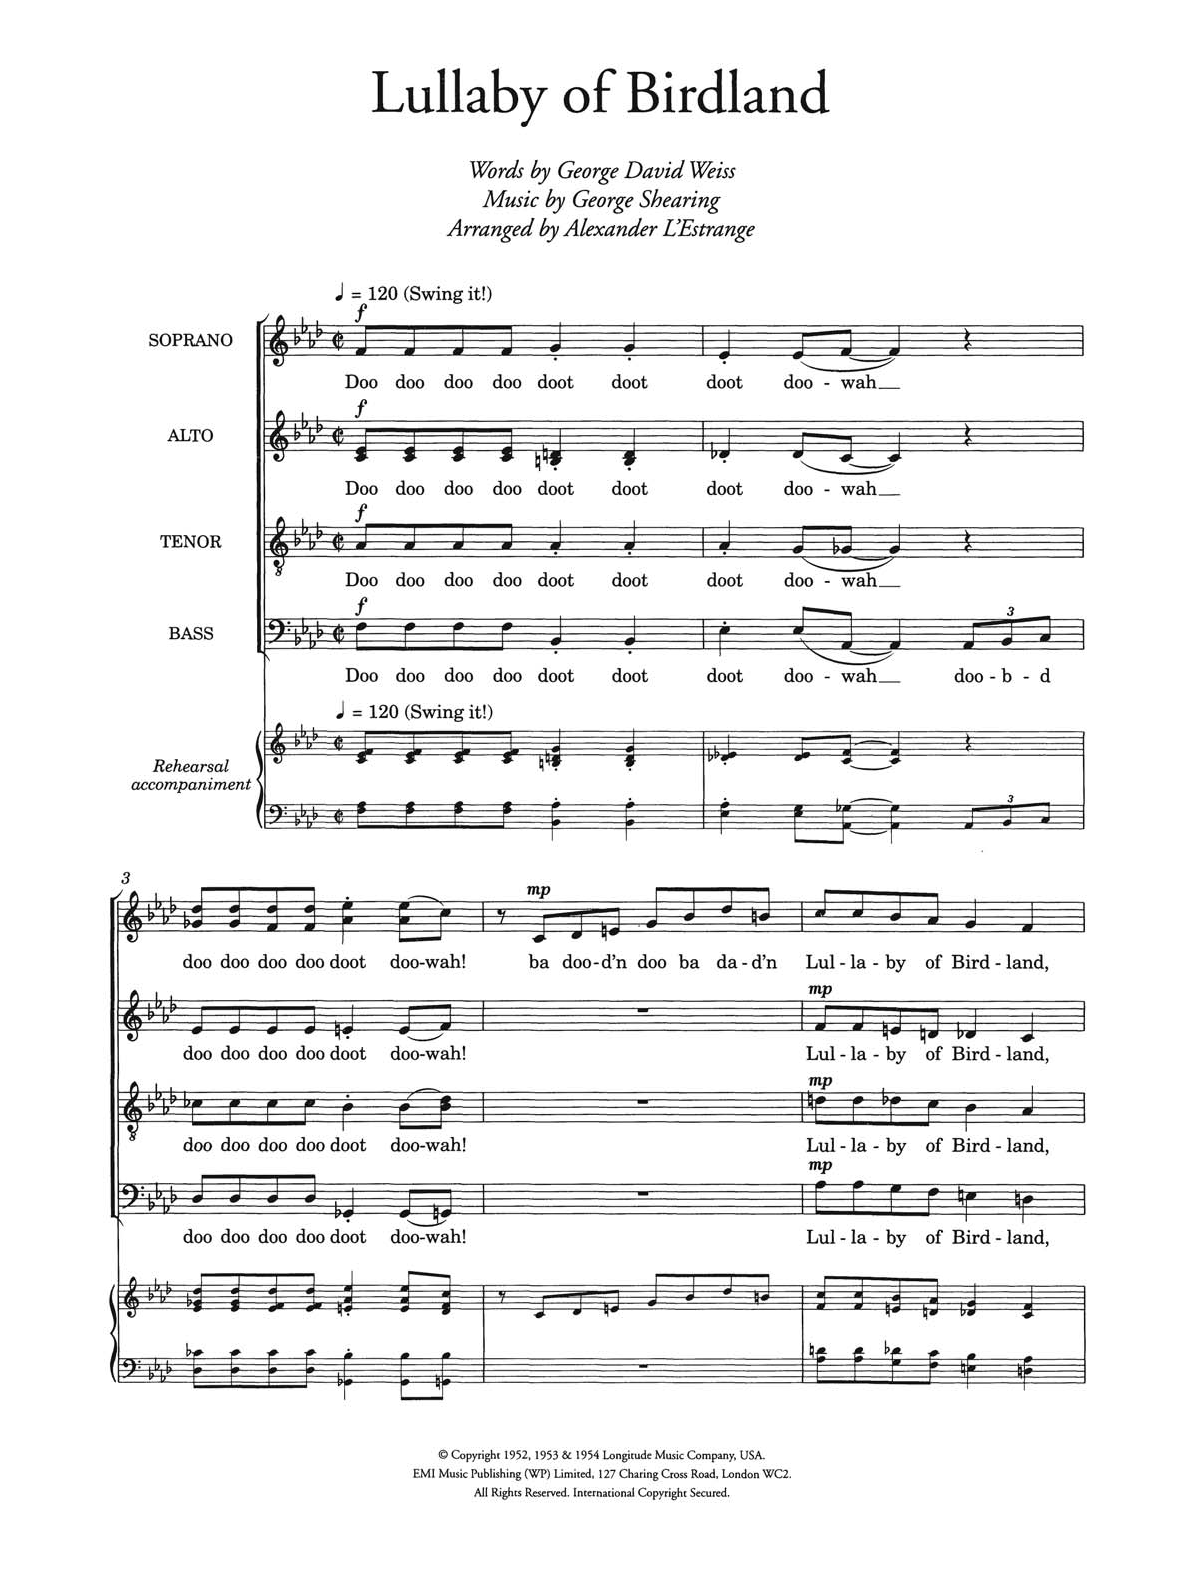 Ella Fitzgerald Lullaby Of Birdland (arr. Alexander L'Estrange) Sheet Music Notes & Chords for Choir - Download or Print PDF